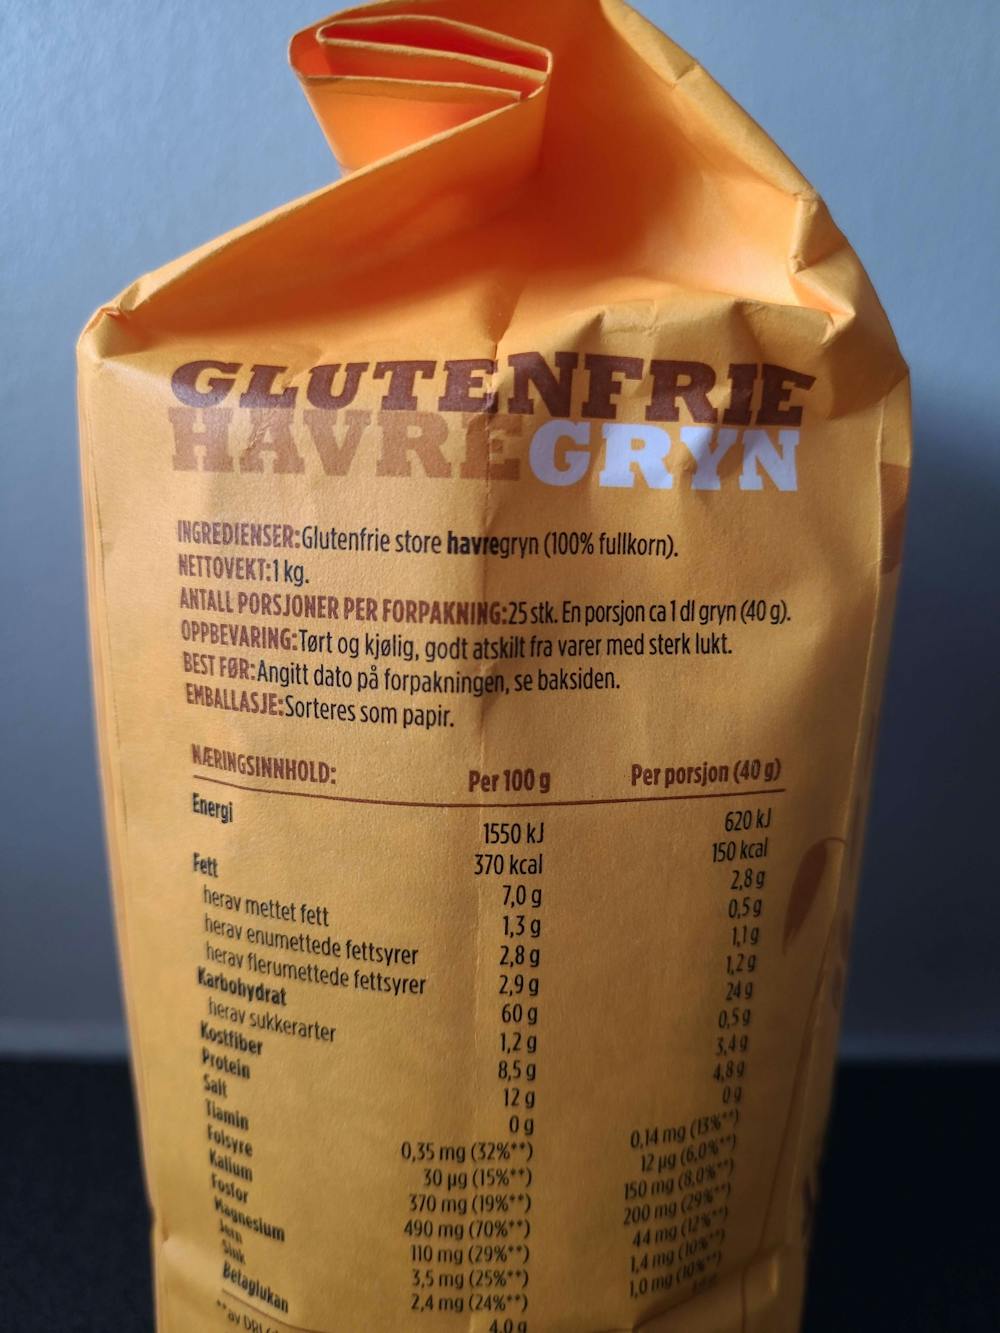 Ingredienslisten til Glutenfrie havregryn, Axa